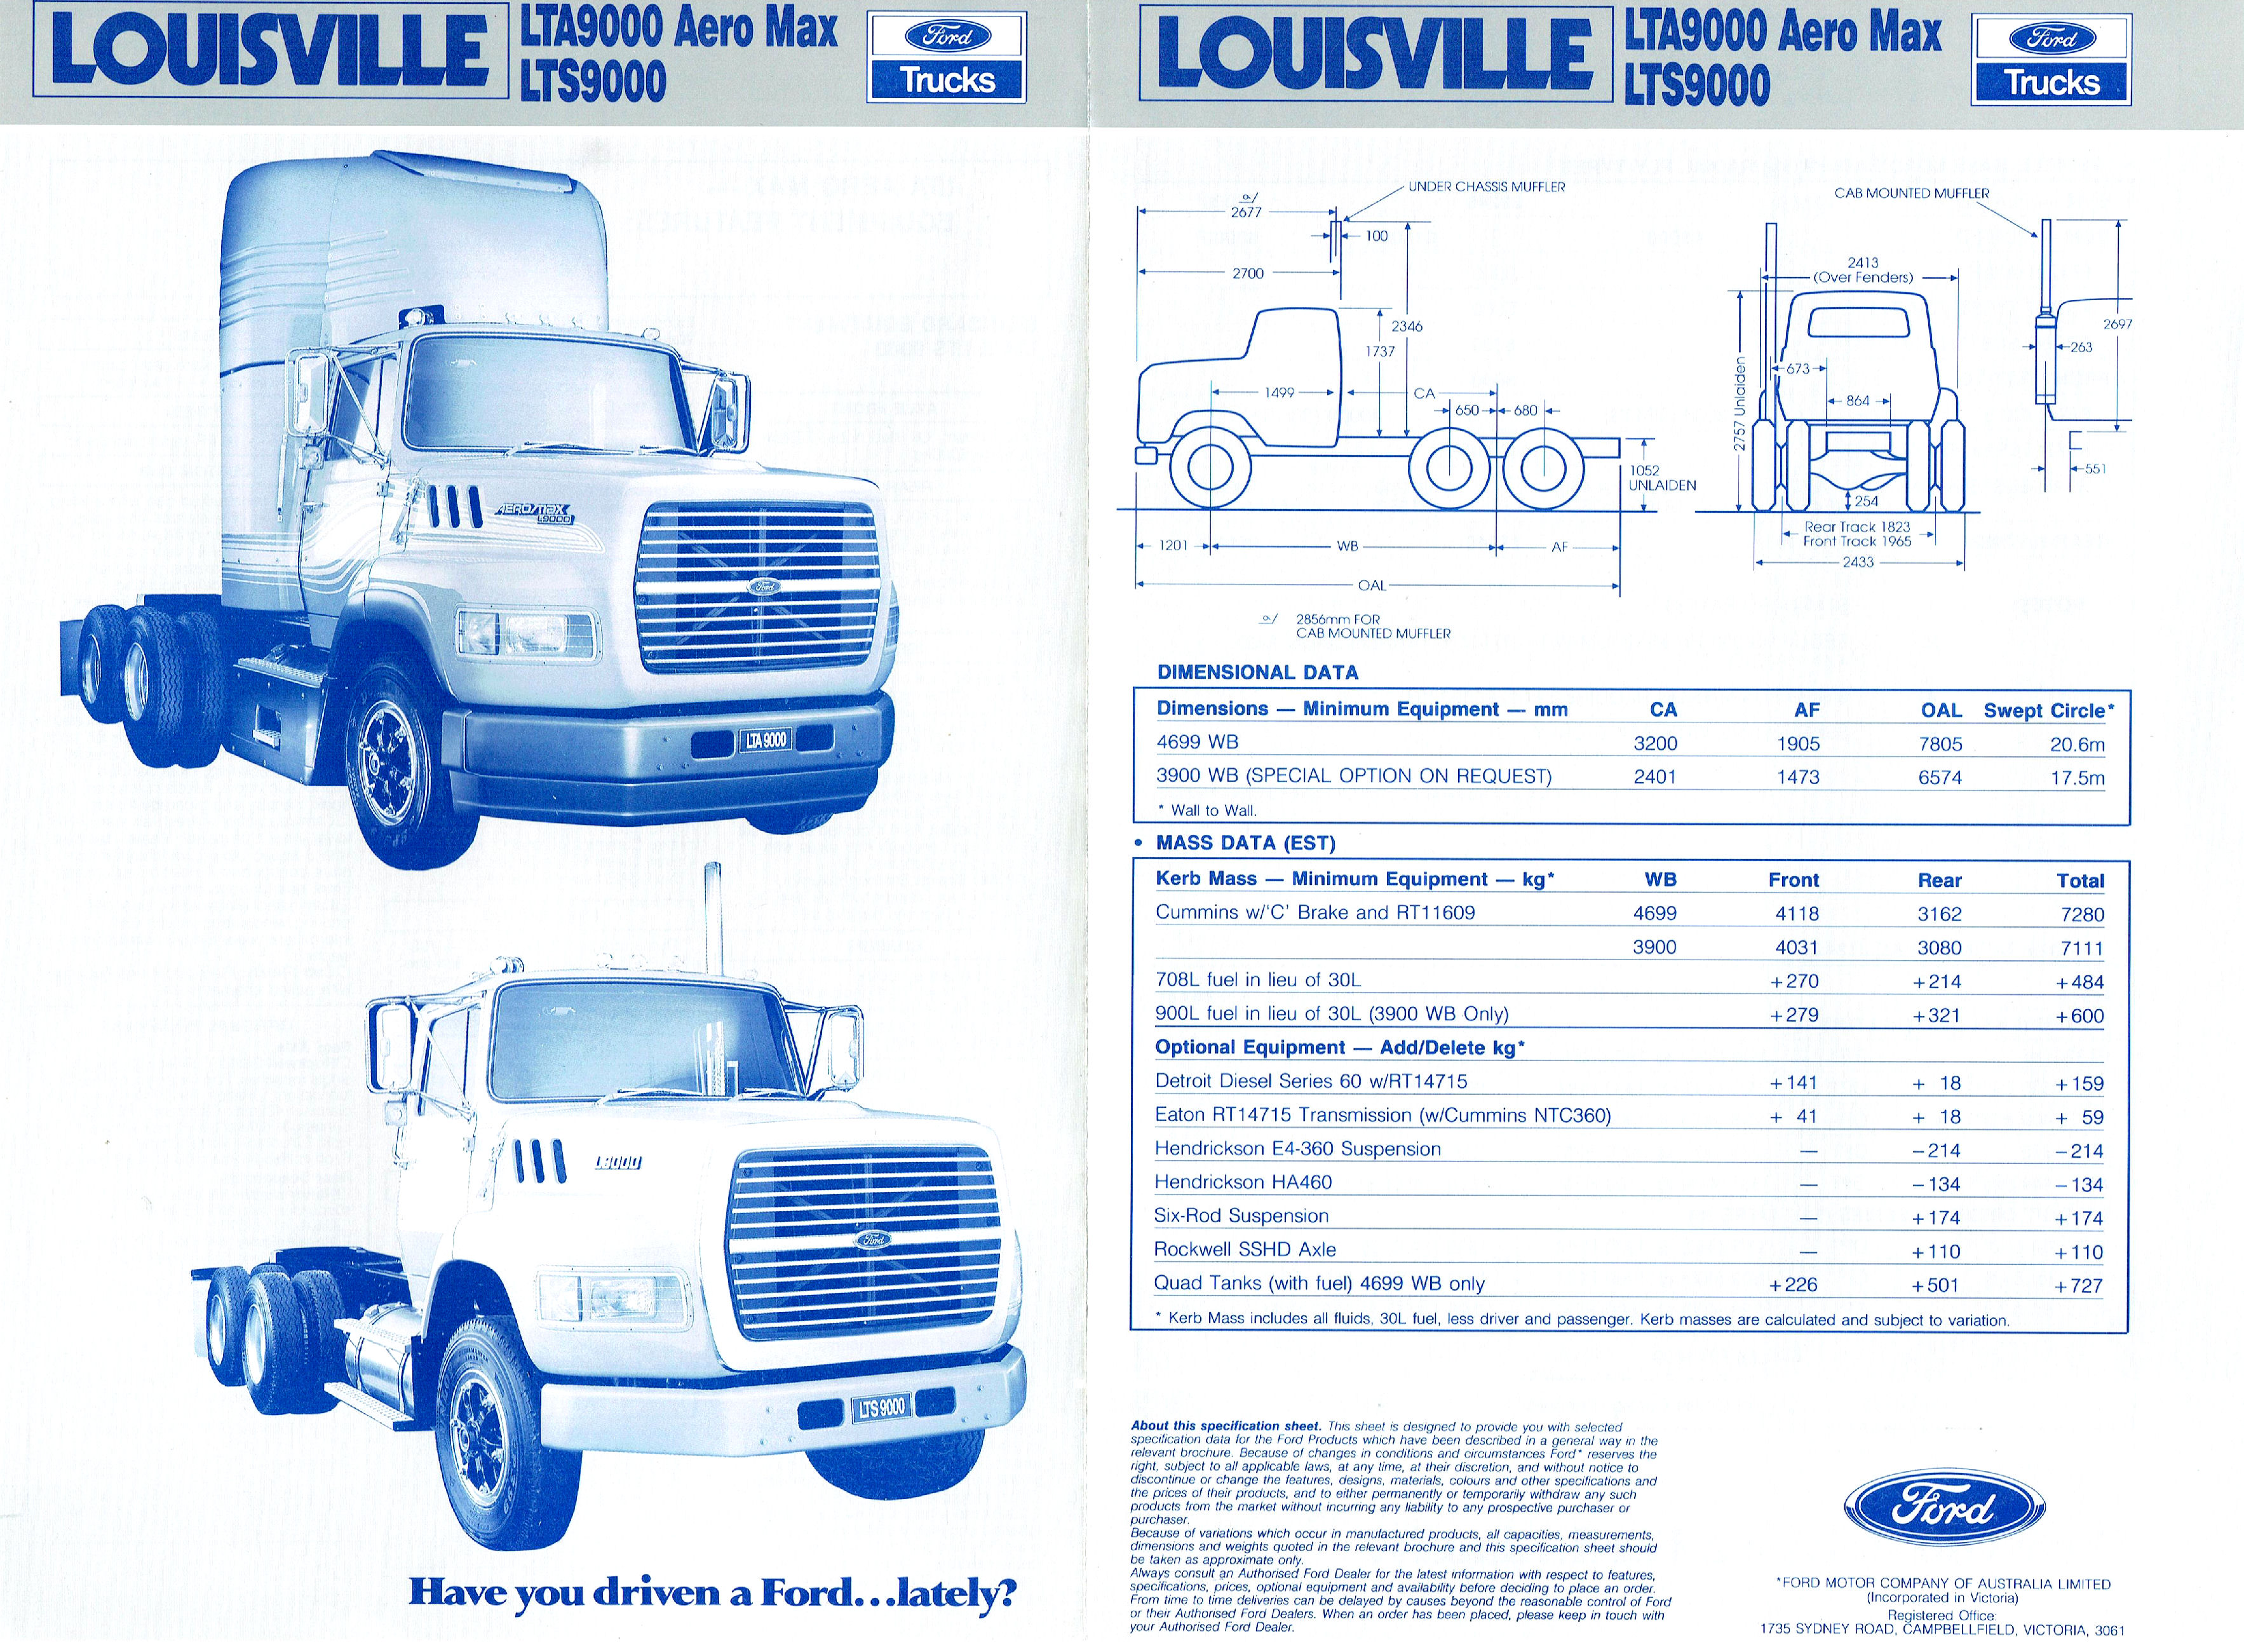 1990 Ford Louisville Aero Max (Aus)-Side A.jpg-2022-12-7 13.54.58